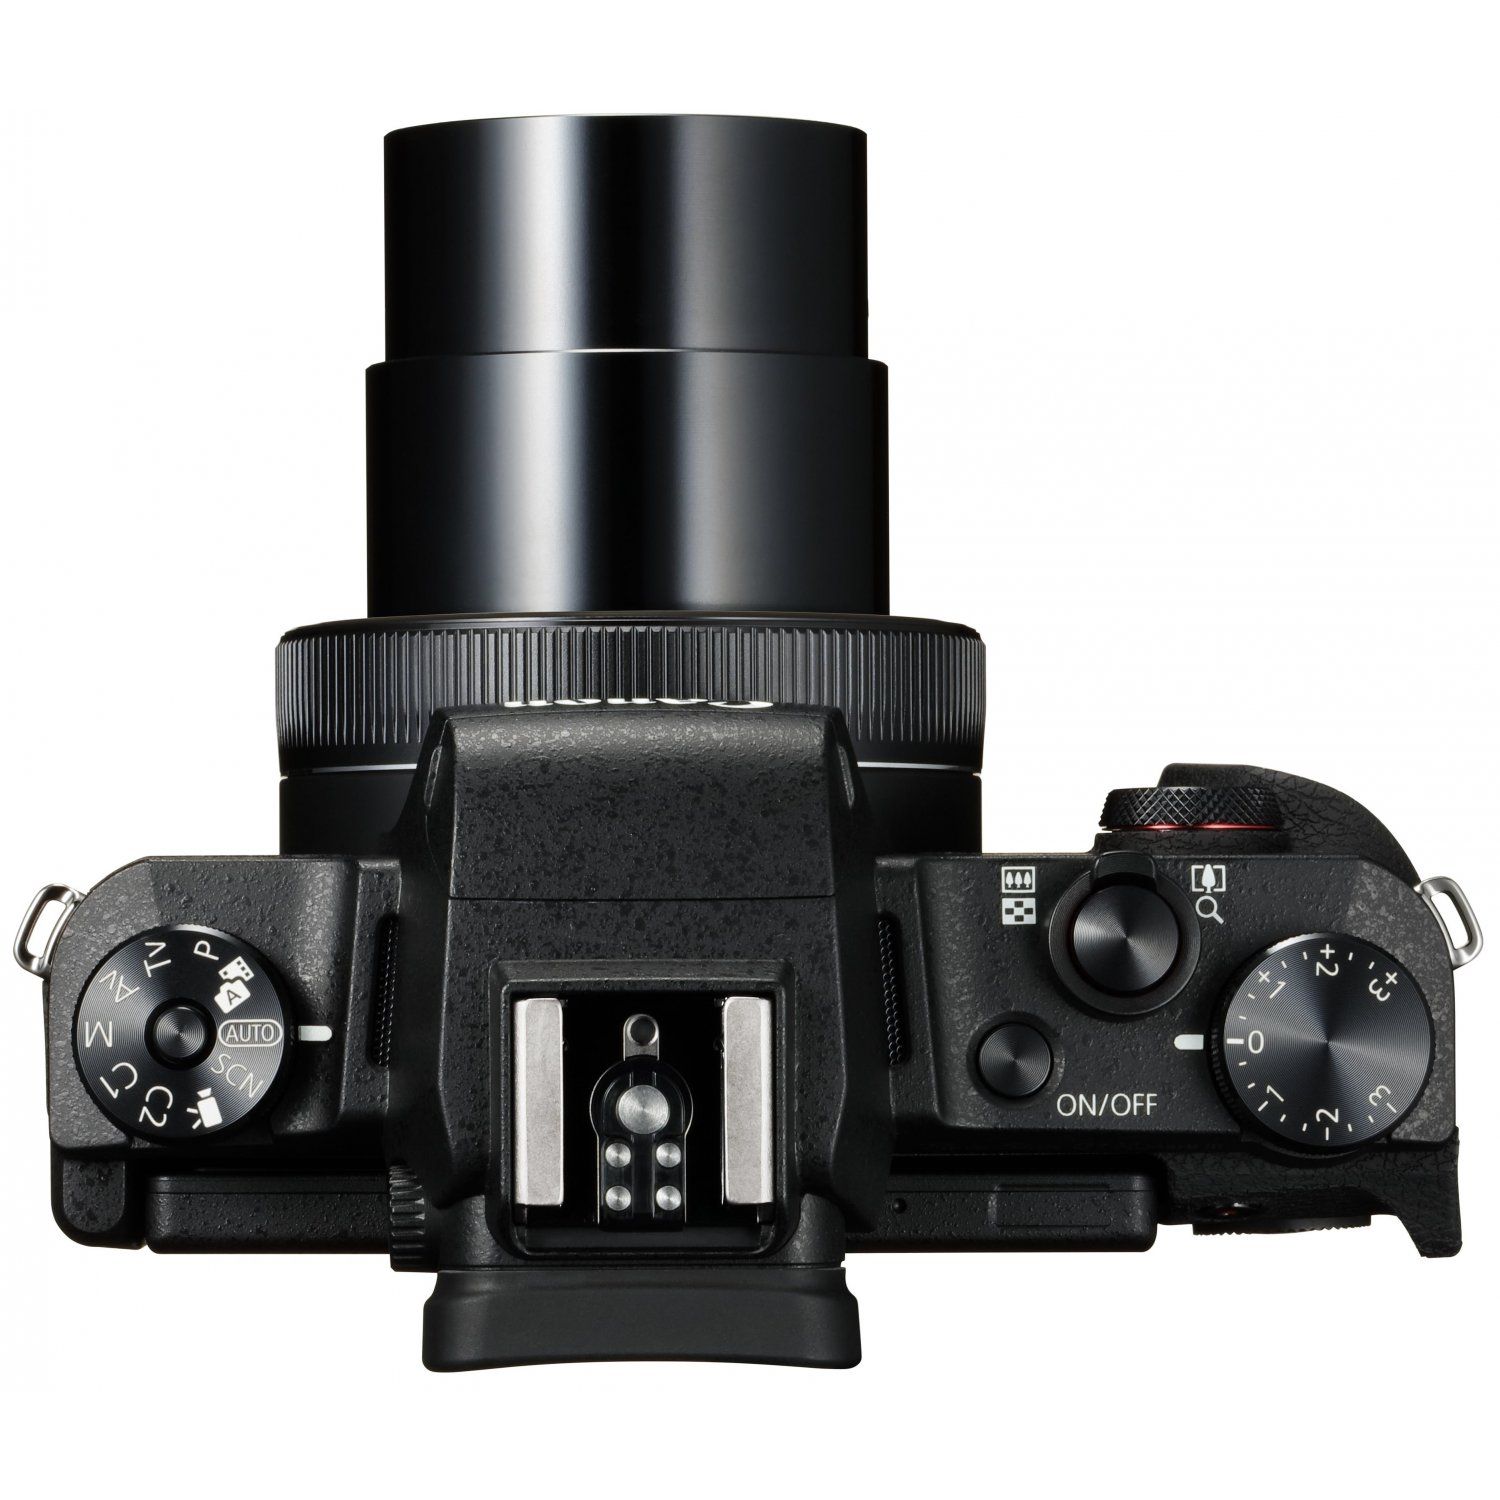 Canon PowerShot G1 X Mark III 